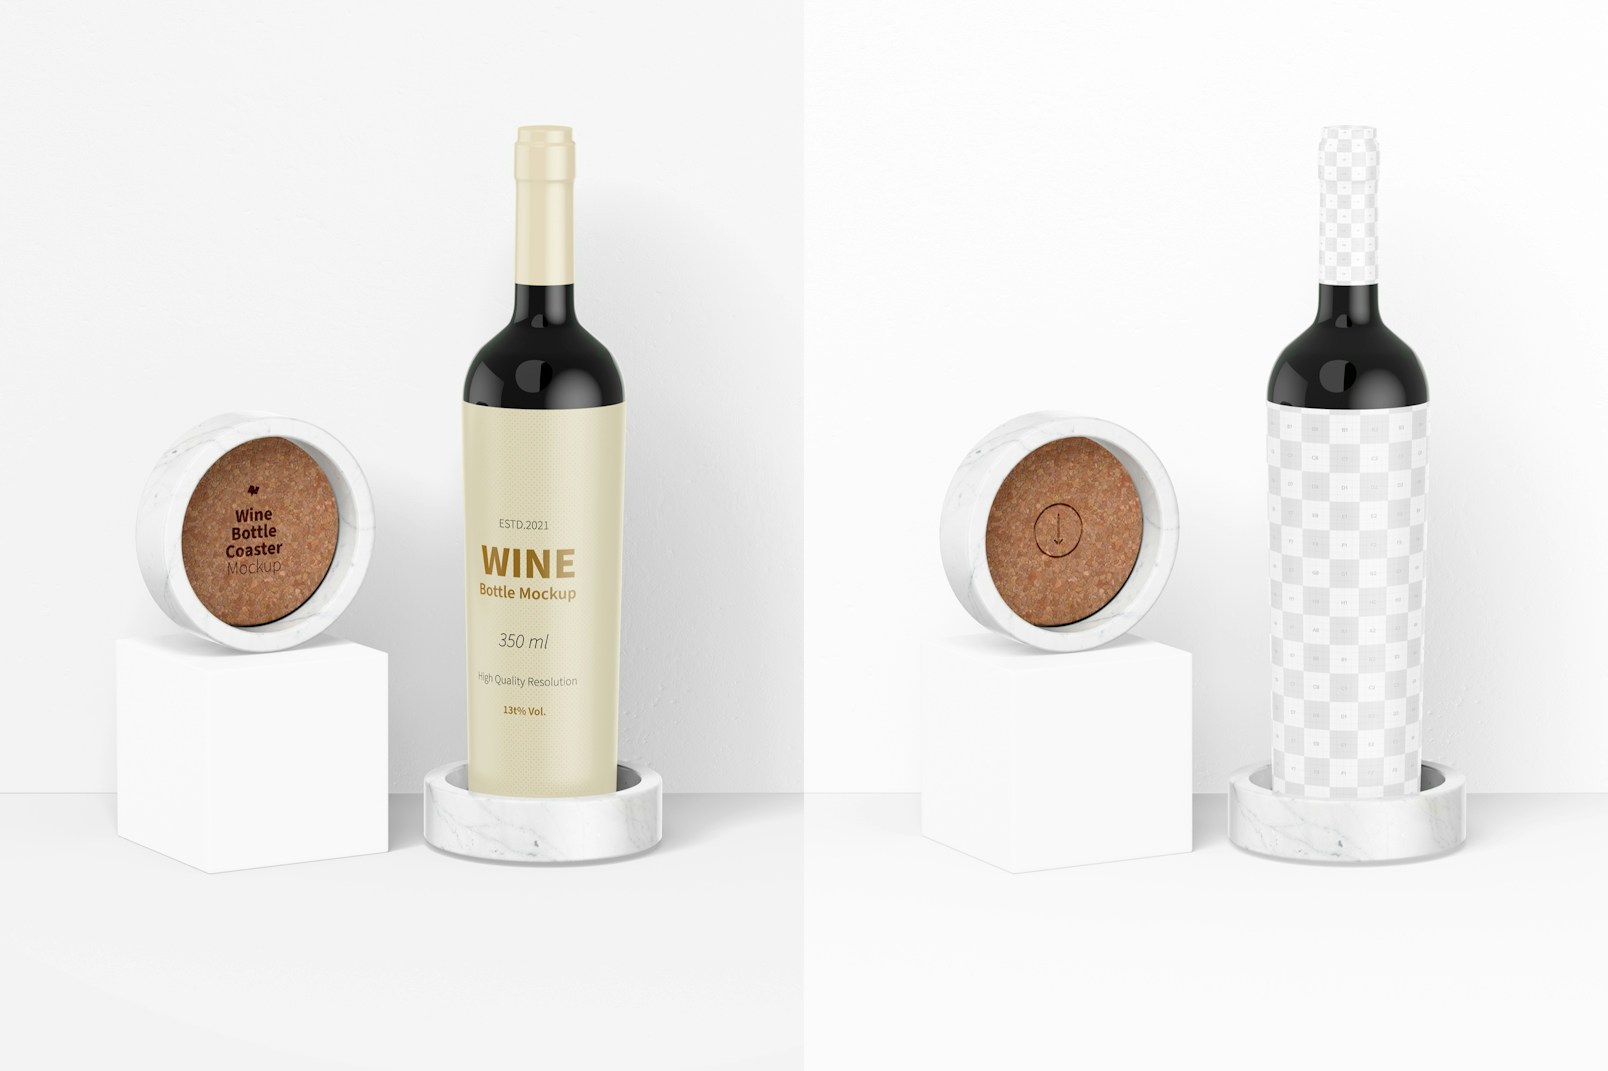 Wine Bottle Coaster on Podium Mockup